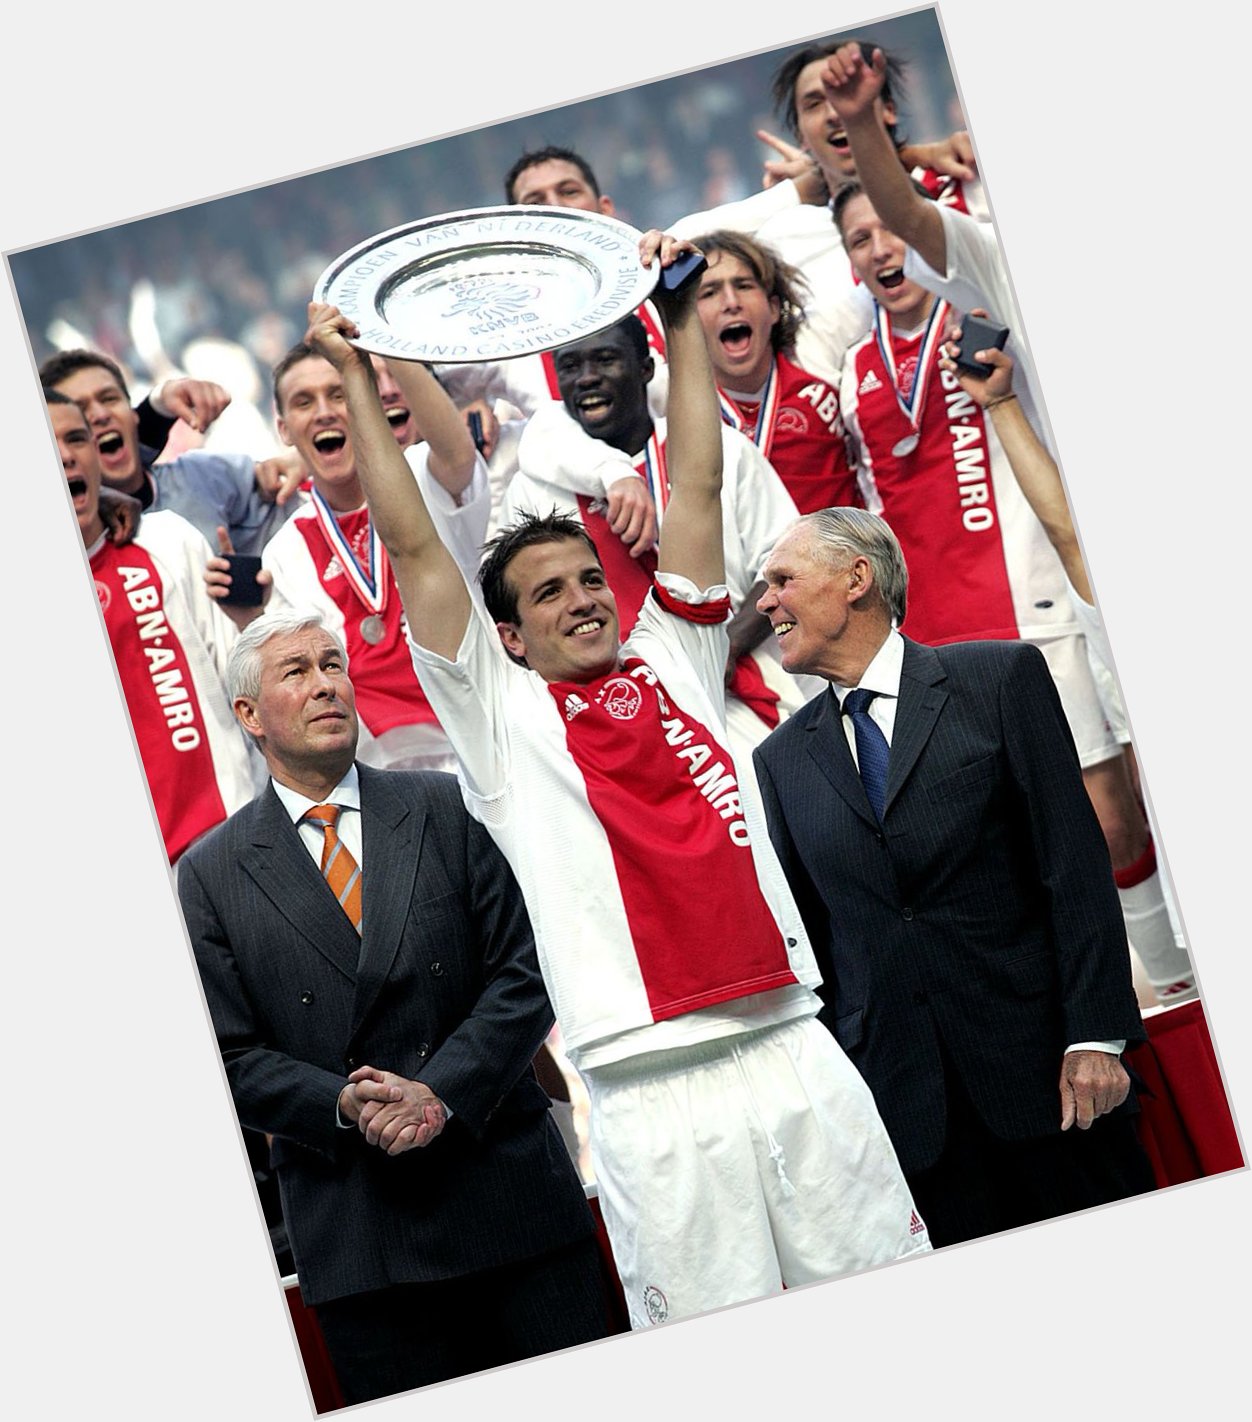 Rafael van der Vaart turns  today! Happy birthday to an Ajax legend! 